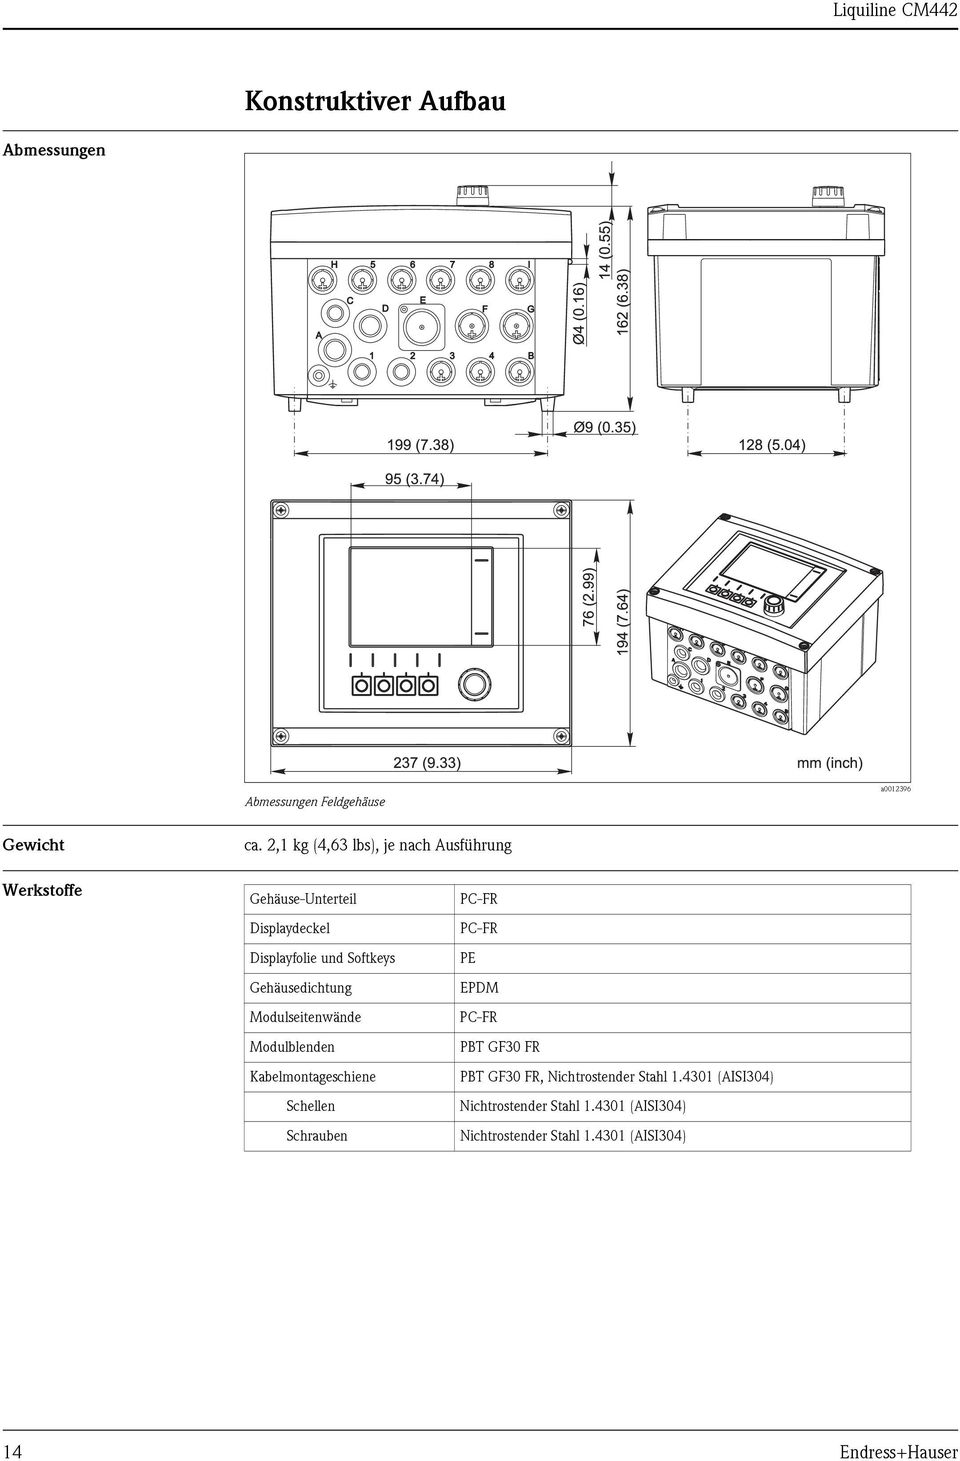 Gehäusedichtung Modulseitenwände Modulblenden Kabelmontageschiene Schellen Schrauben PC-FR PC-FR PE EPDM PC-FR